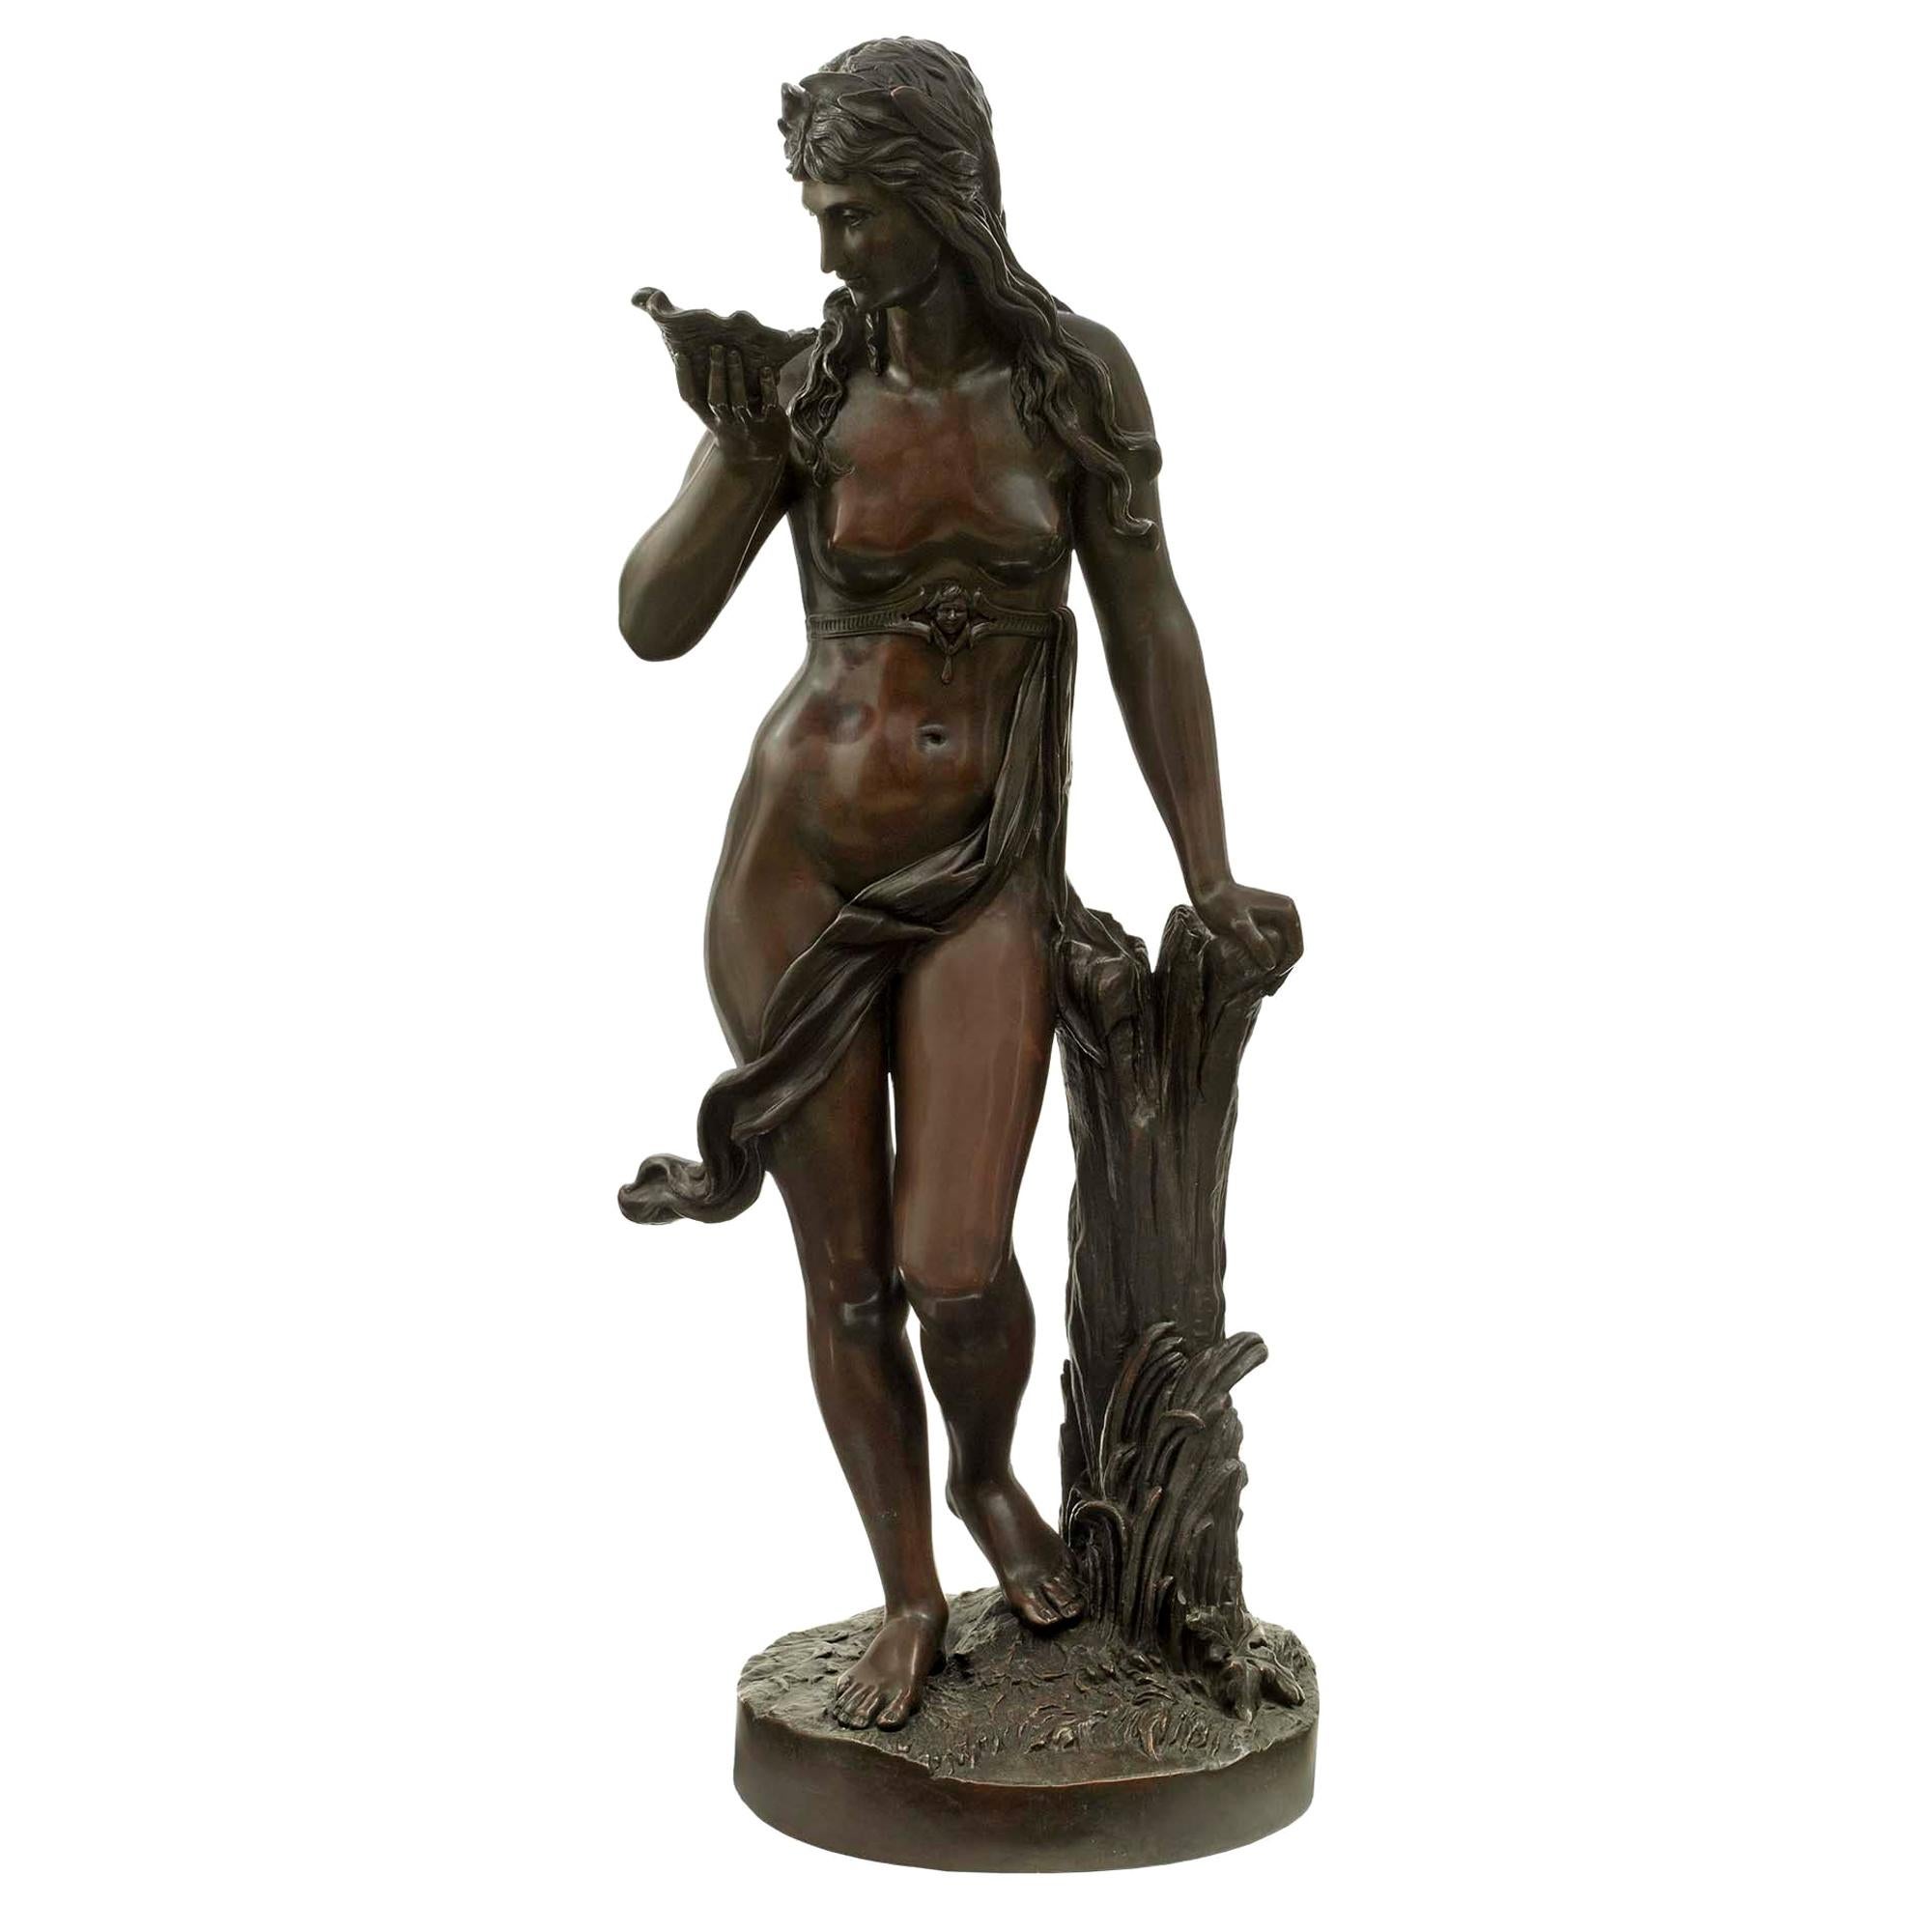 Statue continentale en bronze patiné du 19ème siècle d'une jeune fille tenant un coquillage